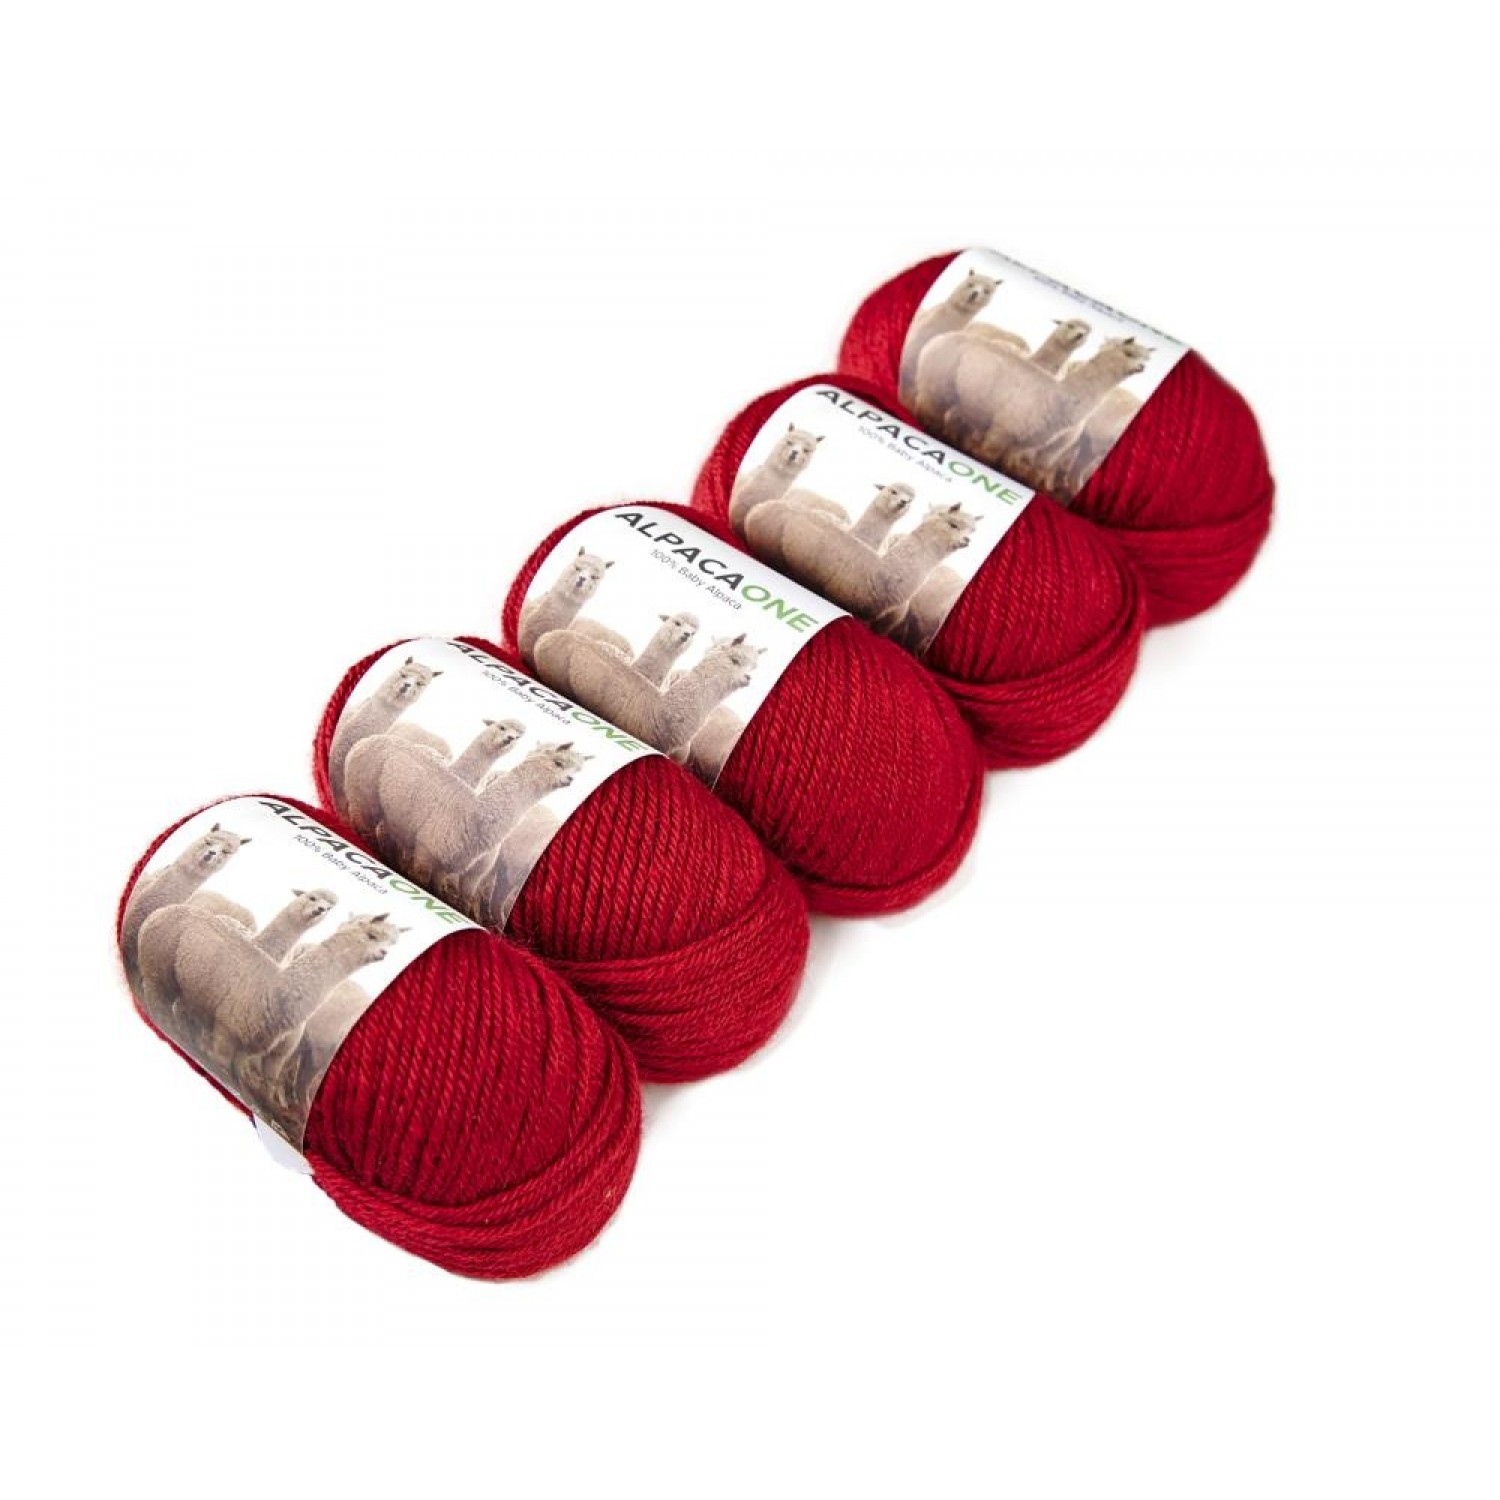 Alpacaone Baby Alpaca wool ball 5 pack red, OEKO-TEX